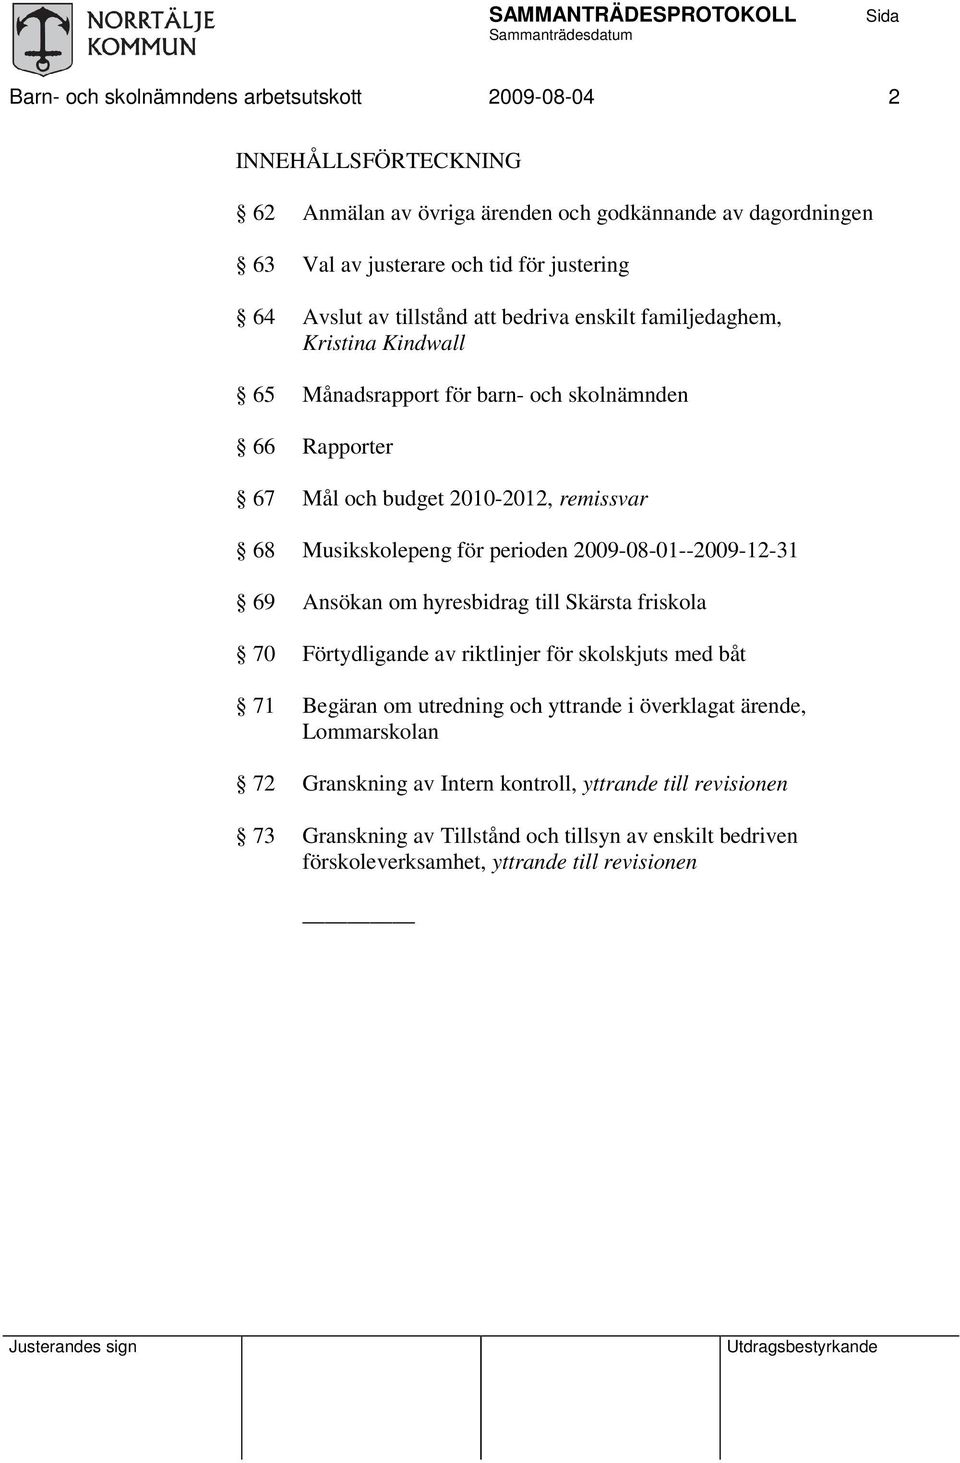 för perioden 2009-08-01--2009-12-31 69 Ansökan om hyresbidrag till Skärsta friskola 70 Förtydligande av riktlinjer för skolskjuts med båt 71 Begäran om utredning och yttrande i